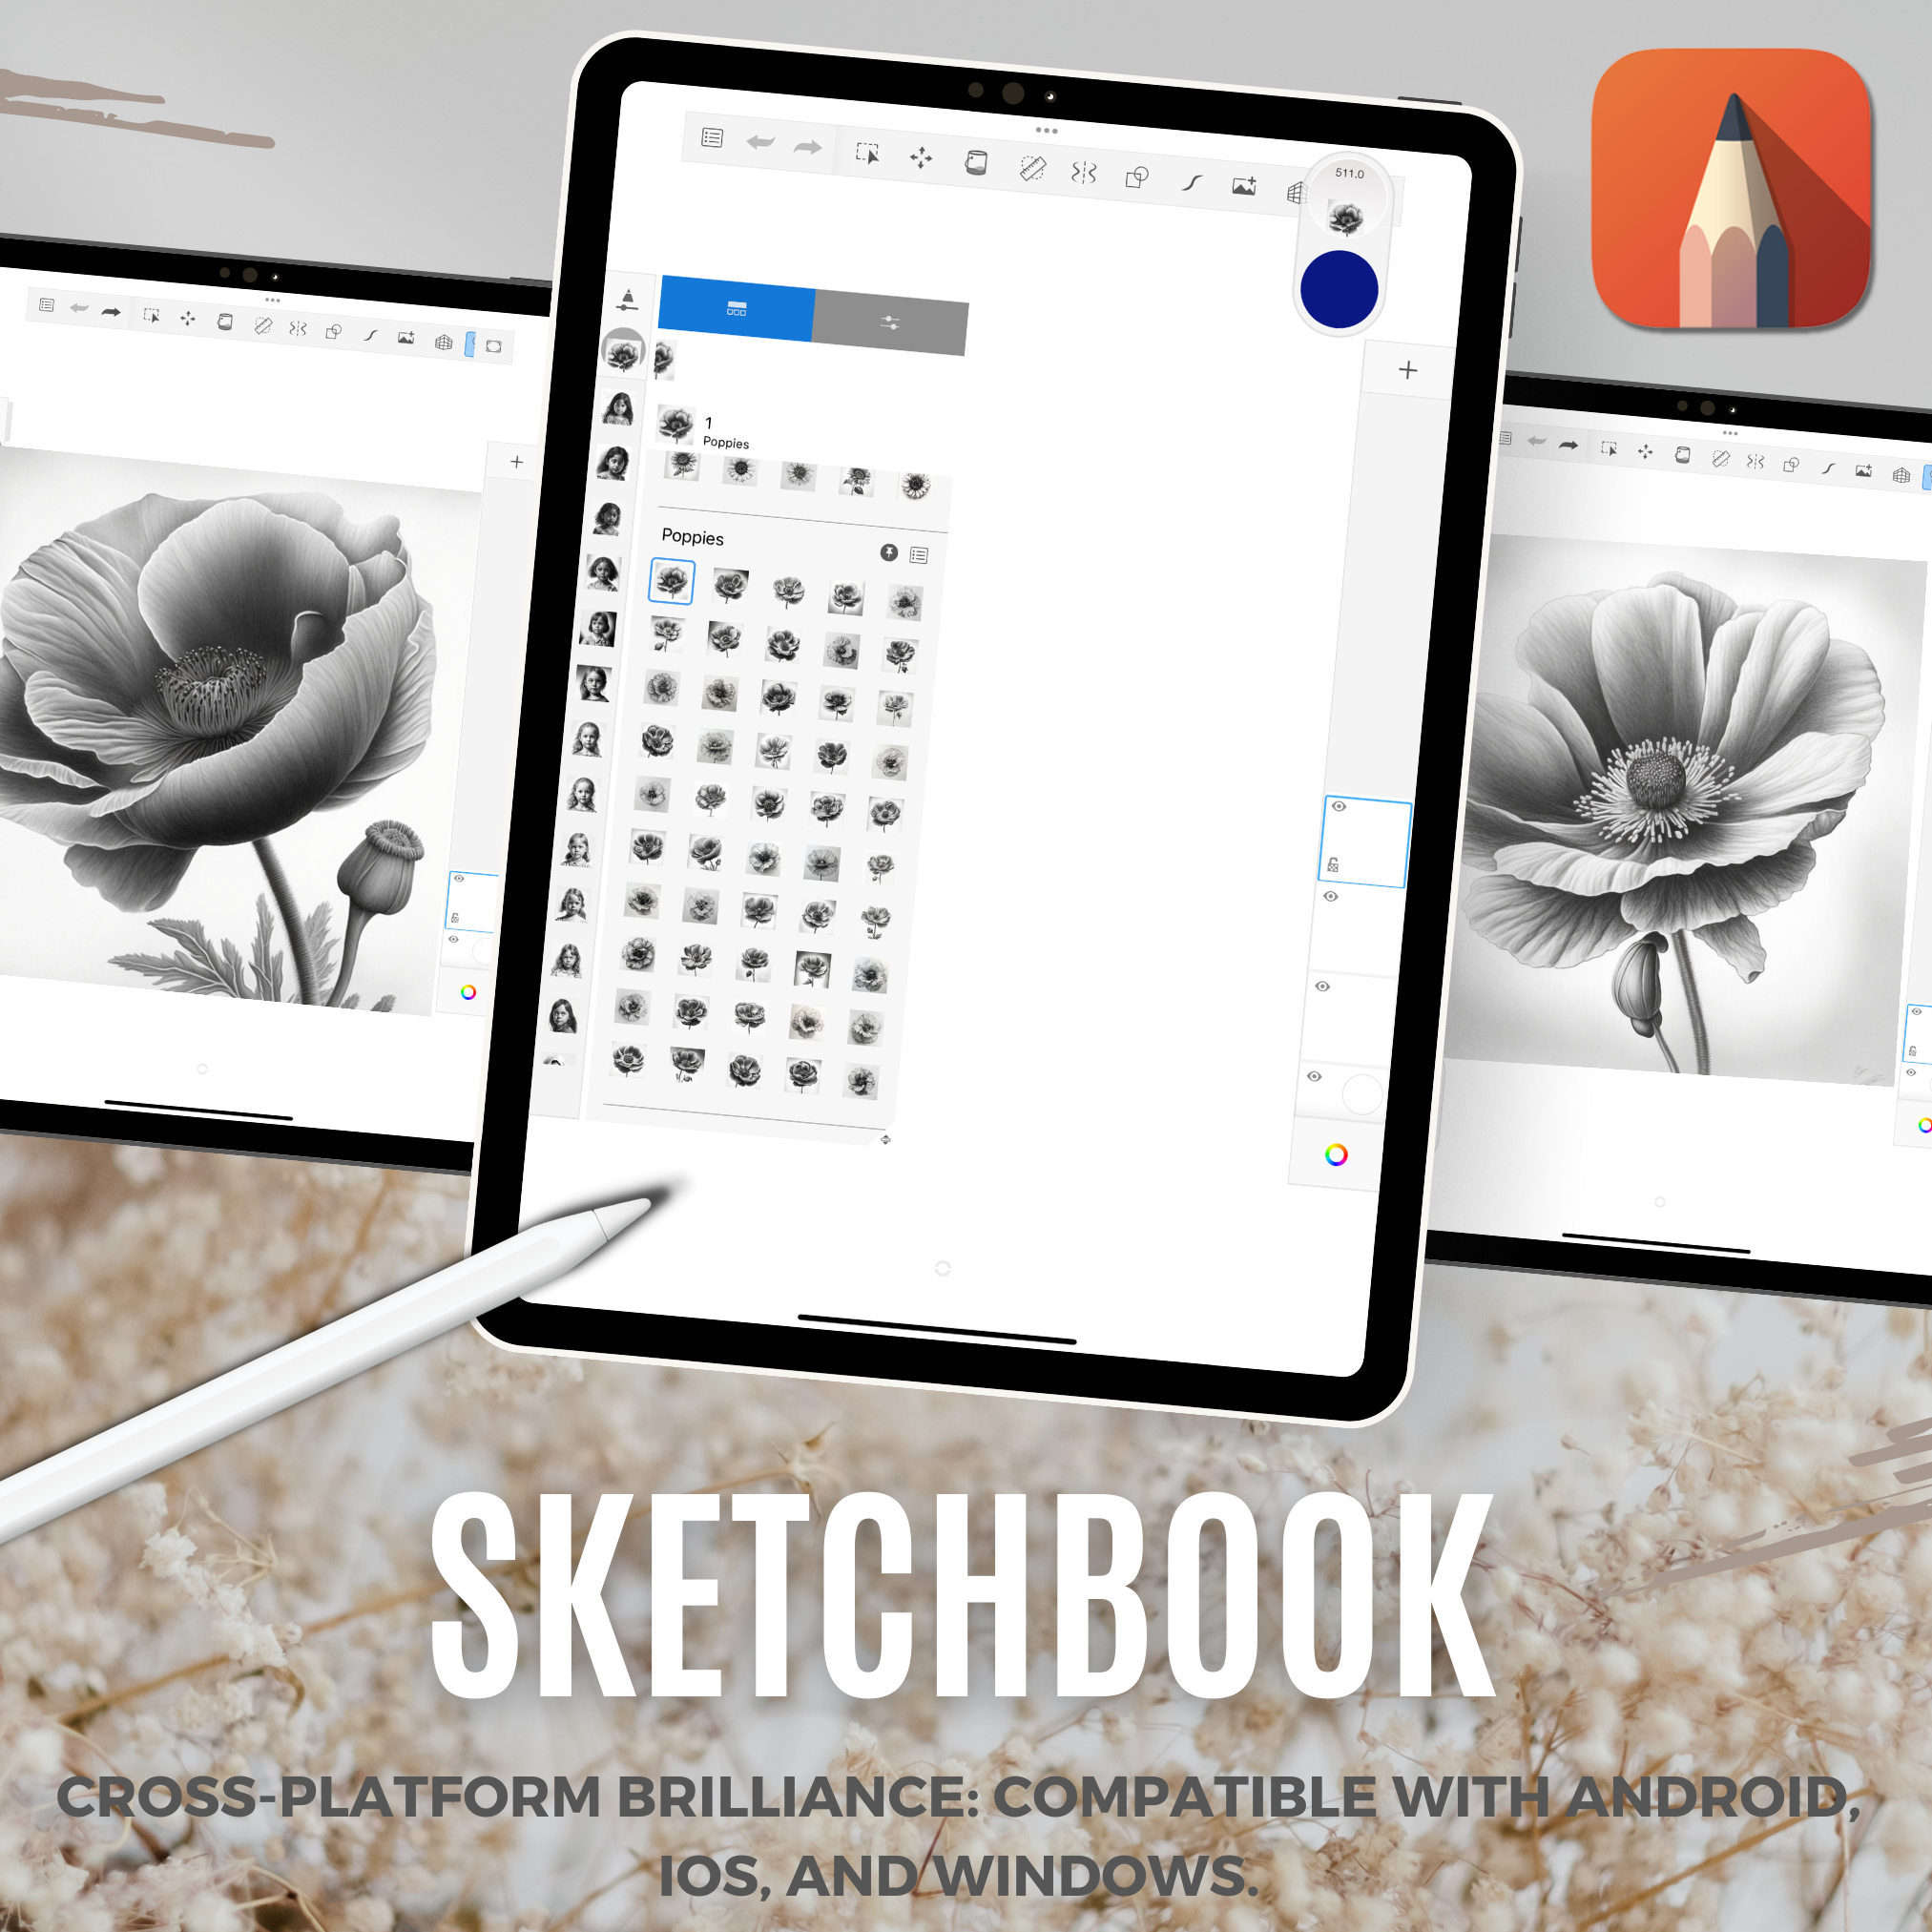 Colección de diseño digital Poppies: 50 imágenes de Procreate y Sketchbook